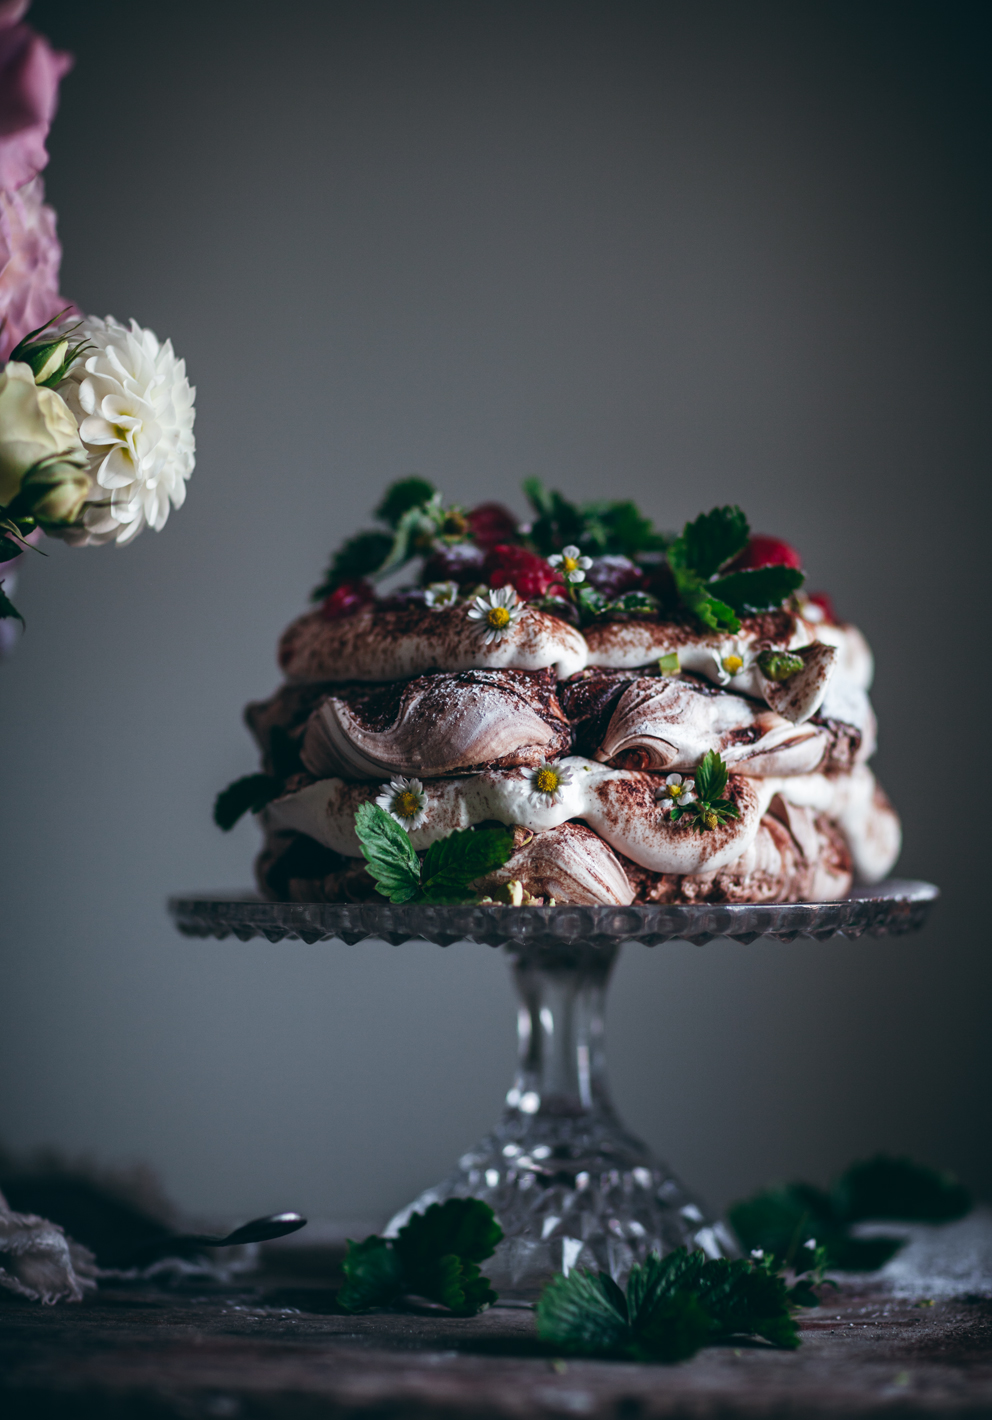 Chocolate Swirl Pavlova with Whipped Cream and Raspberries 9